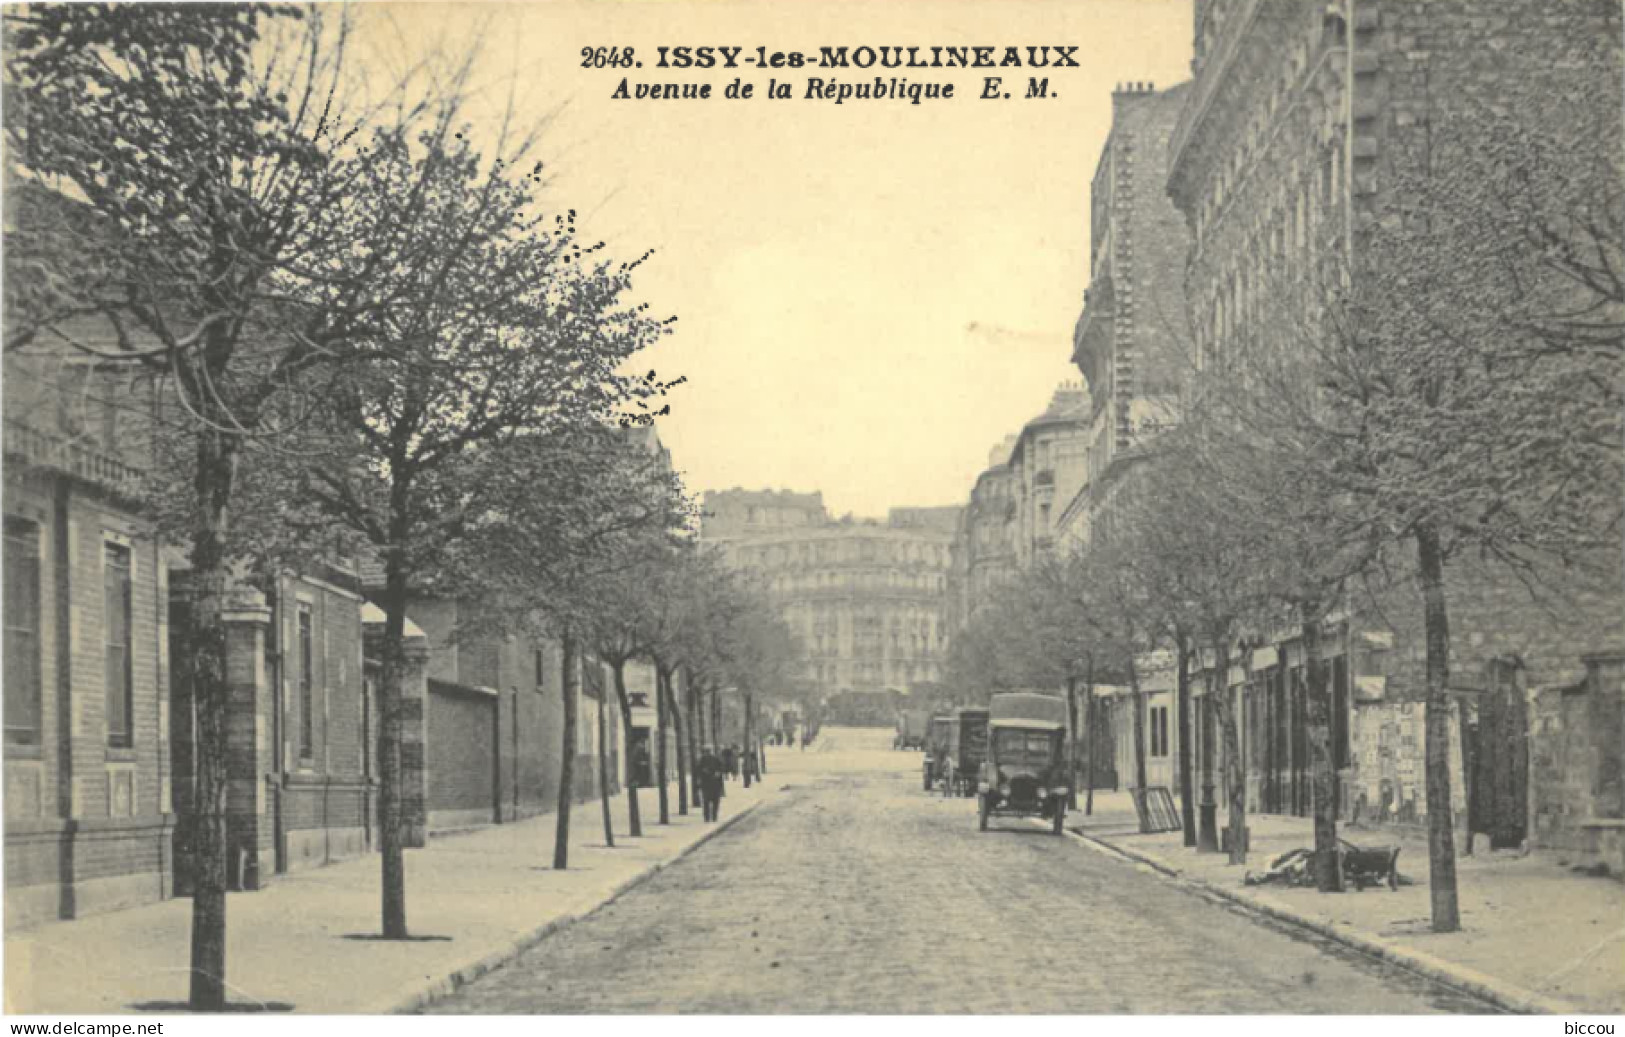 Cp ISSY LES MOULINEAUX 92 - 1934 - Avenue De La République N°2648 E. M. (automobile) - Issy Les Moulineaux